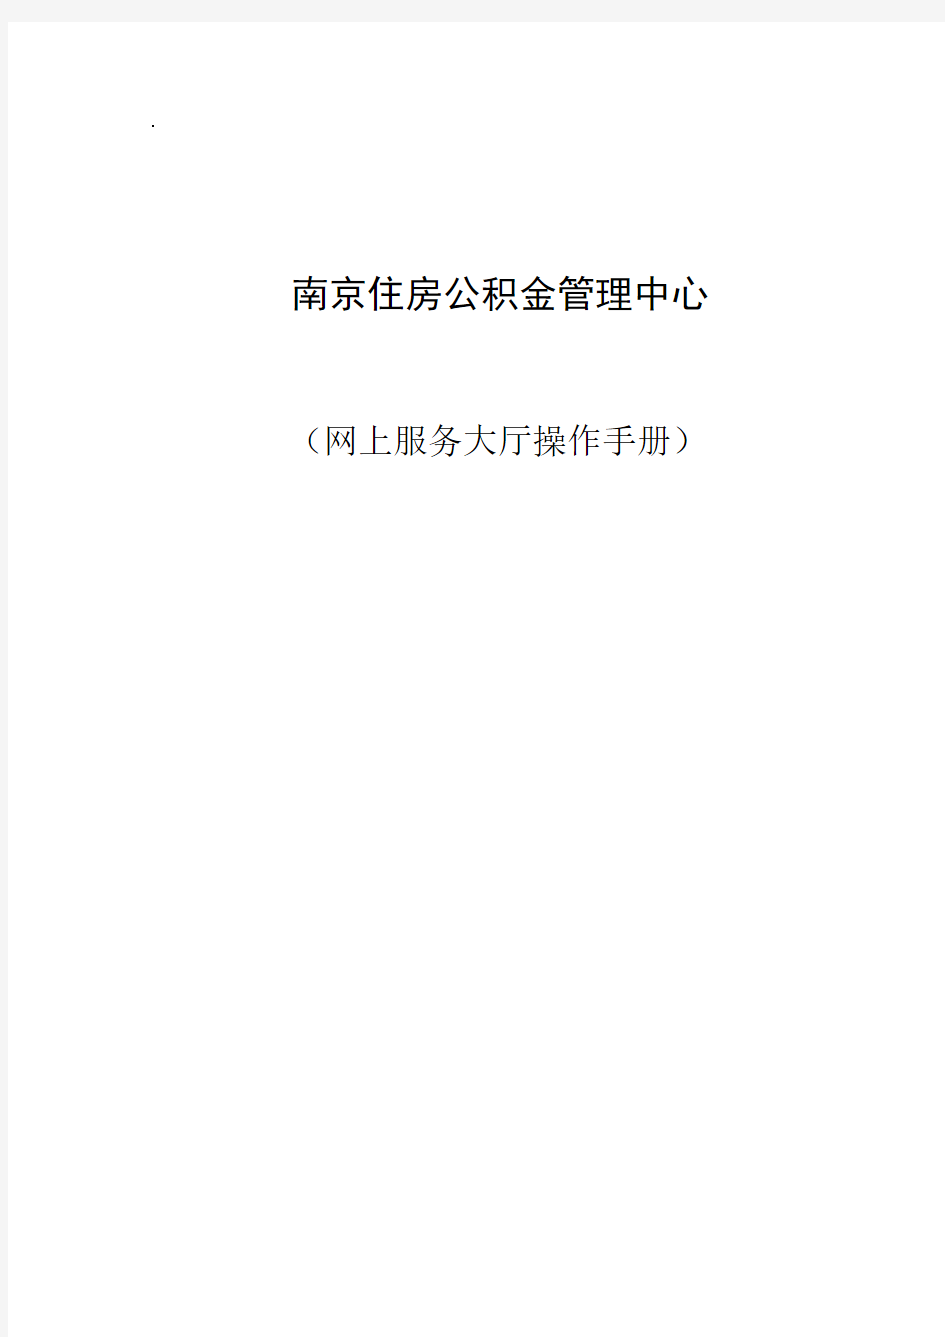 南京公积金网上服务大厅操作手册